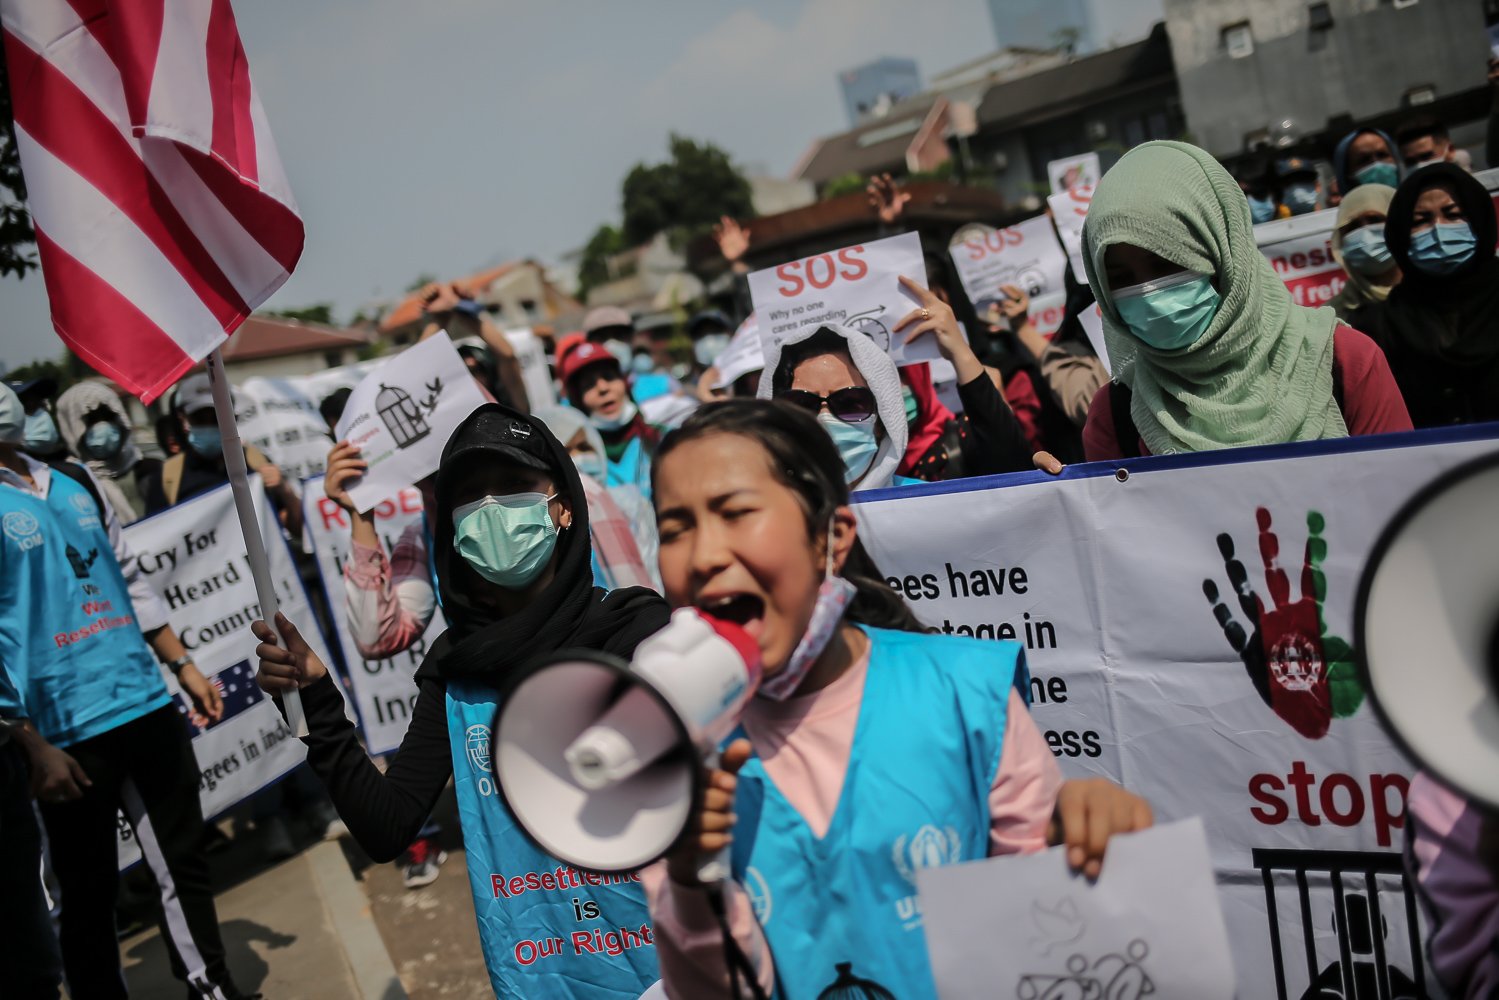 Puluhan imigran atau pencari suaka asal Afghanistan menggelar aksi damai di depan kantor United Nations High Commissioner for Refugees (UNHCR) Indonesia, Jakarta, Senin (20/6/2022). Aksi damai tersebut dilakukan demi menuntut UNHCR memberi kejelasan dan memberangkatkan mereka ke negara ketiga yang terbebas dari konflik perang.